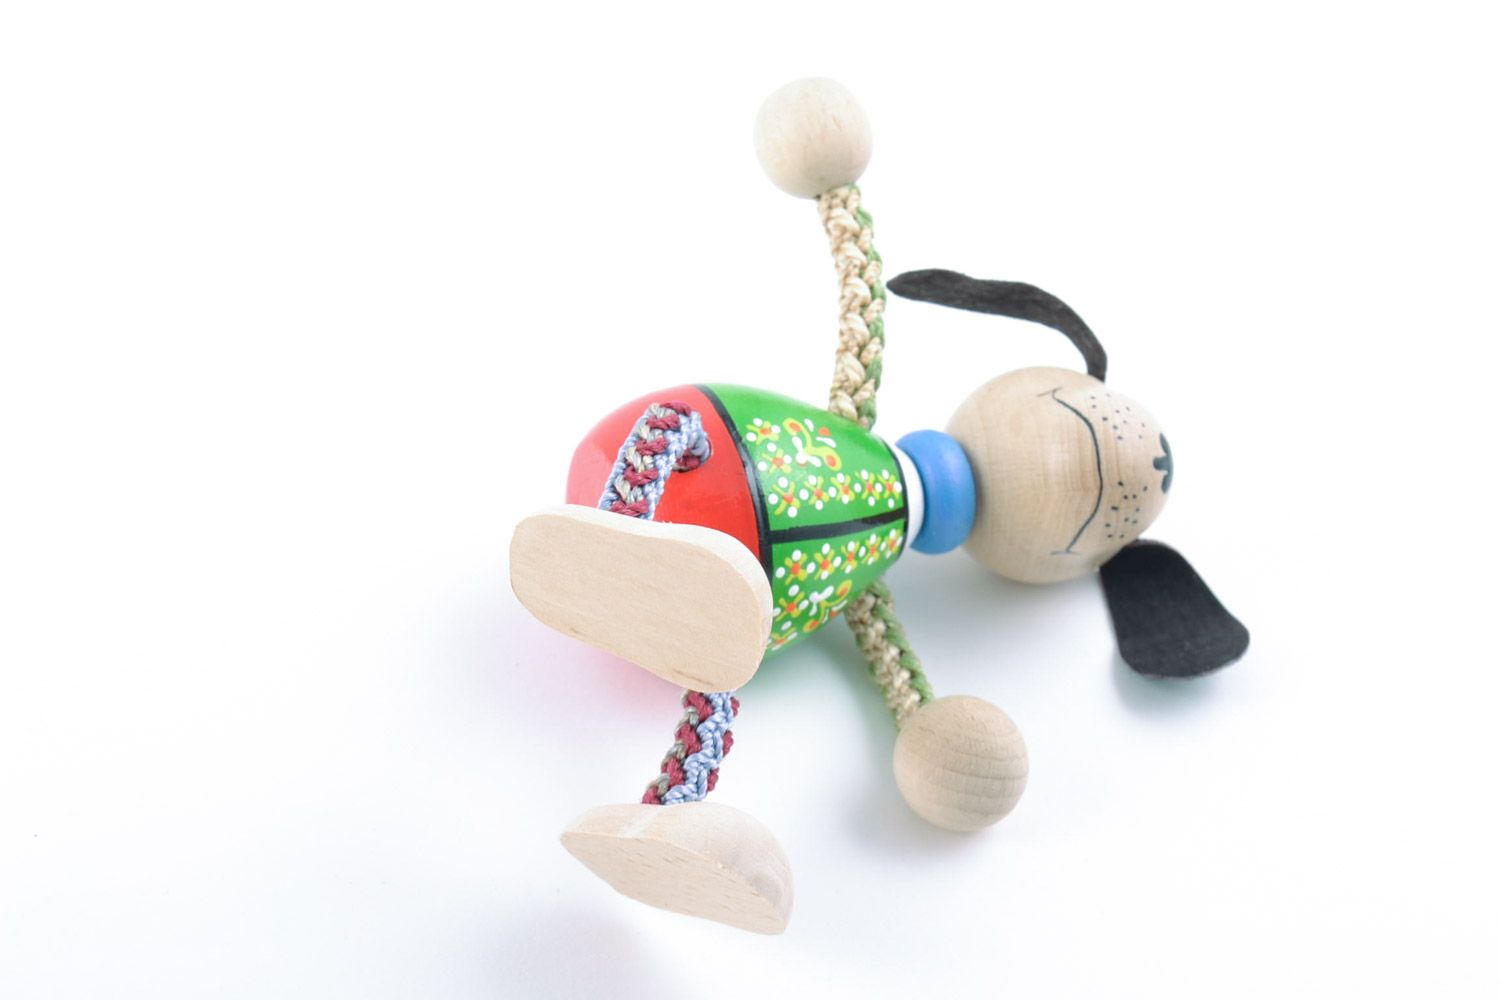 Designer Öko bemaltes kleines interessantes Holz Spielzeug Hund Handarbeit toll  foto 5